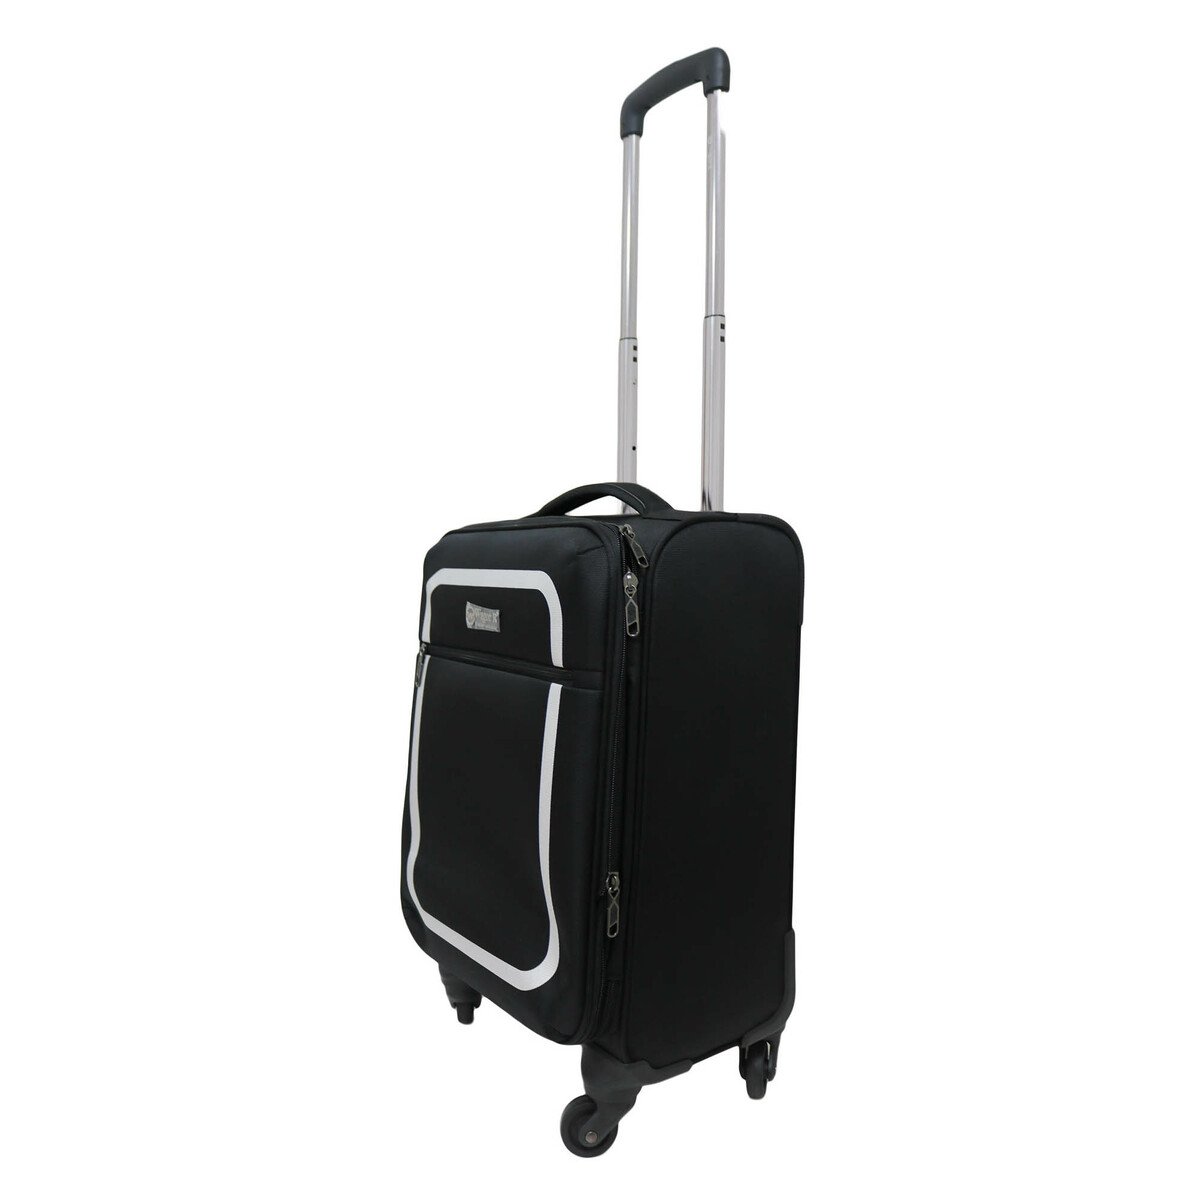 Wagon-R Soft Trolley Bag 19-5003TC 20in